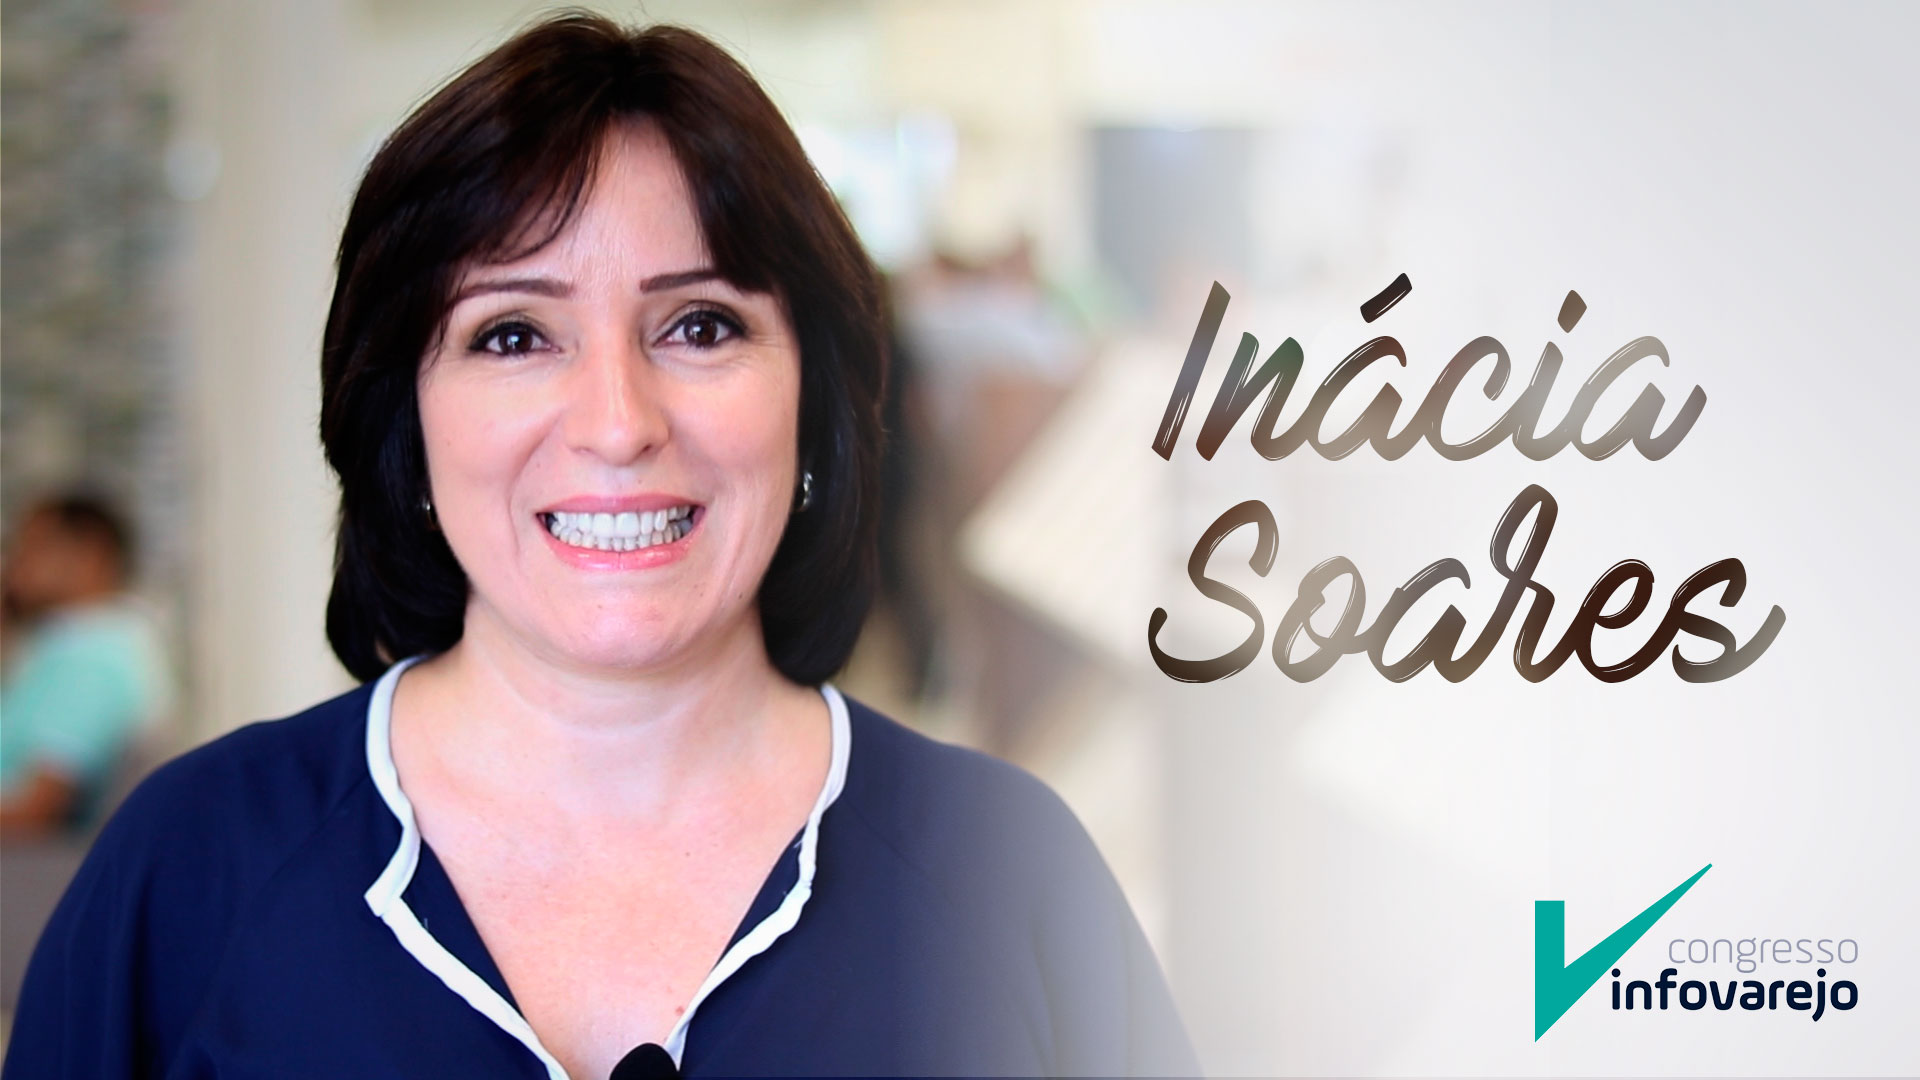 Inácia Soares te convida para o Congresso InfoVarejo!